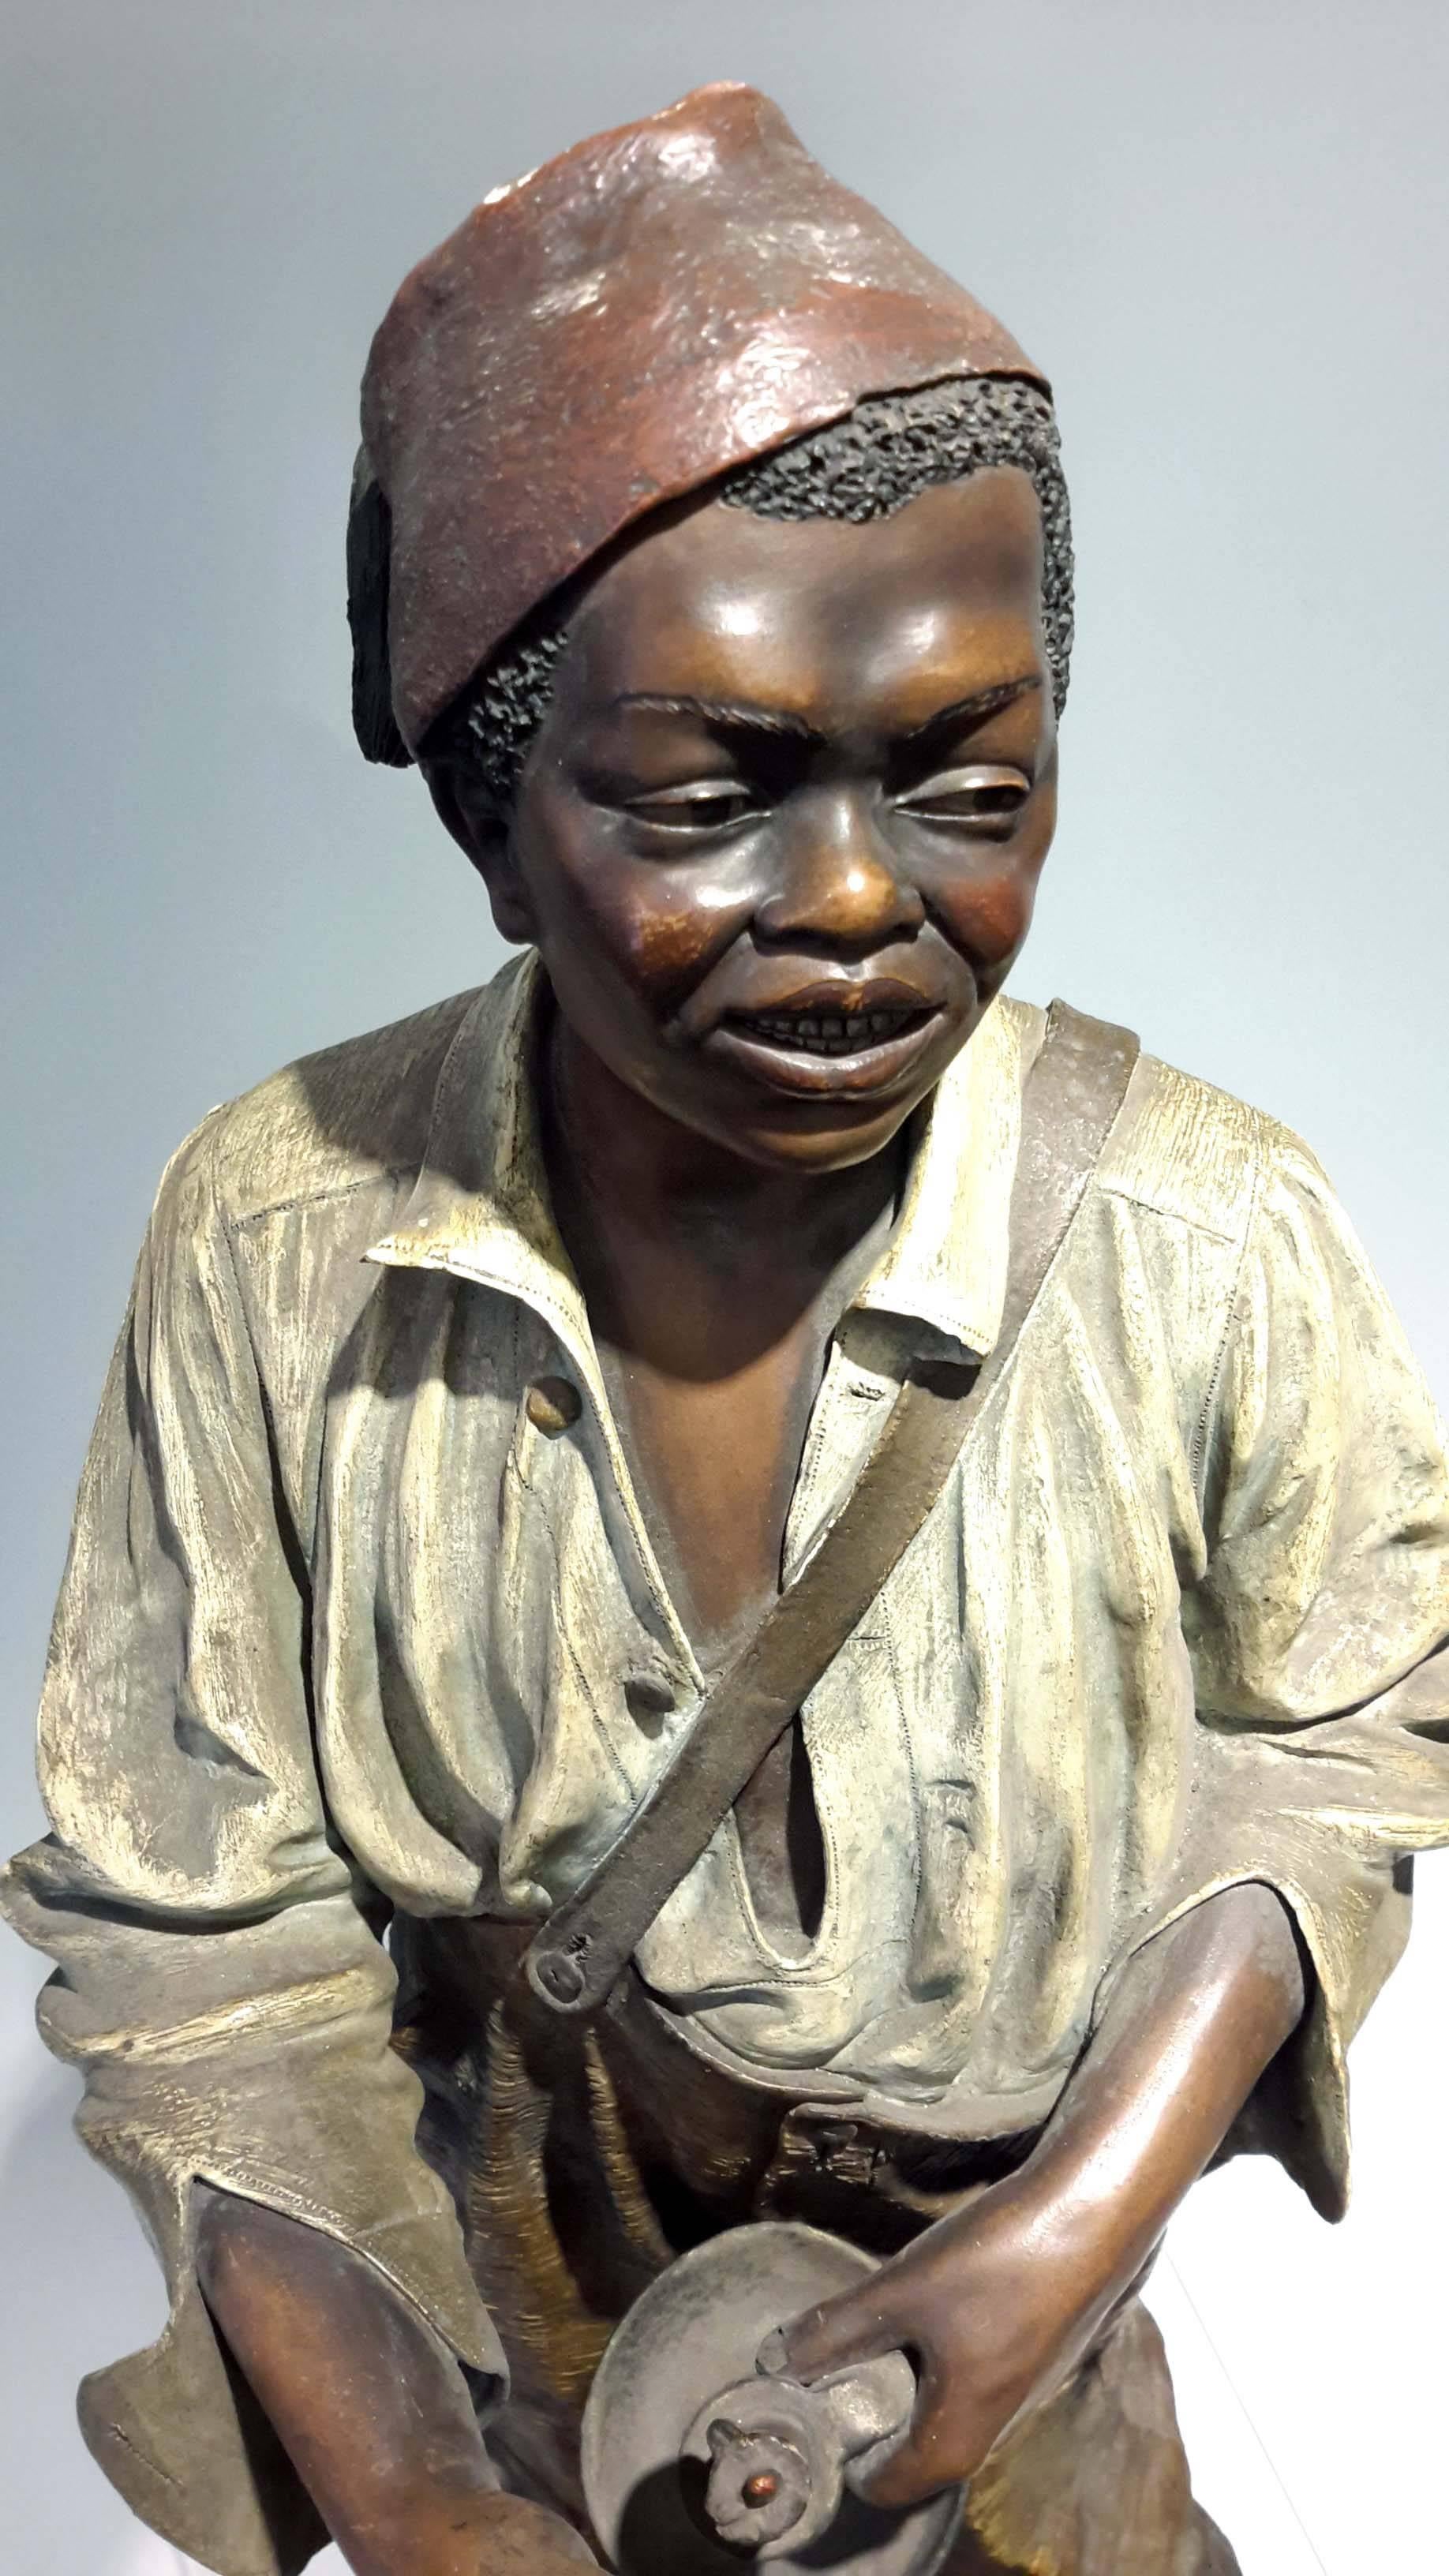 Polychromed Johann Maresch Terracotta Figure an African American Boy, 19th century